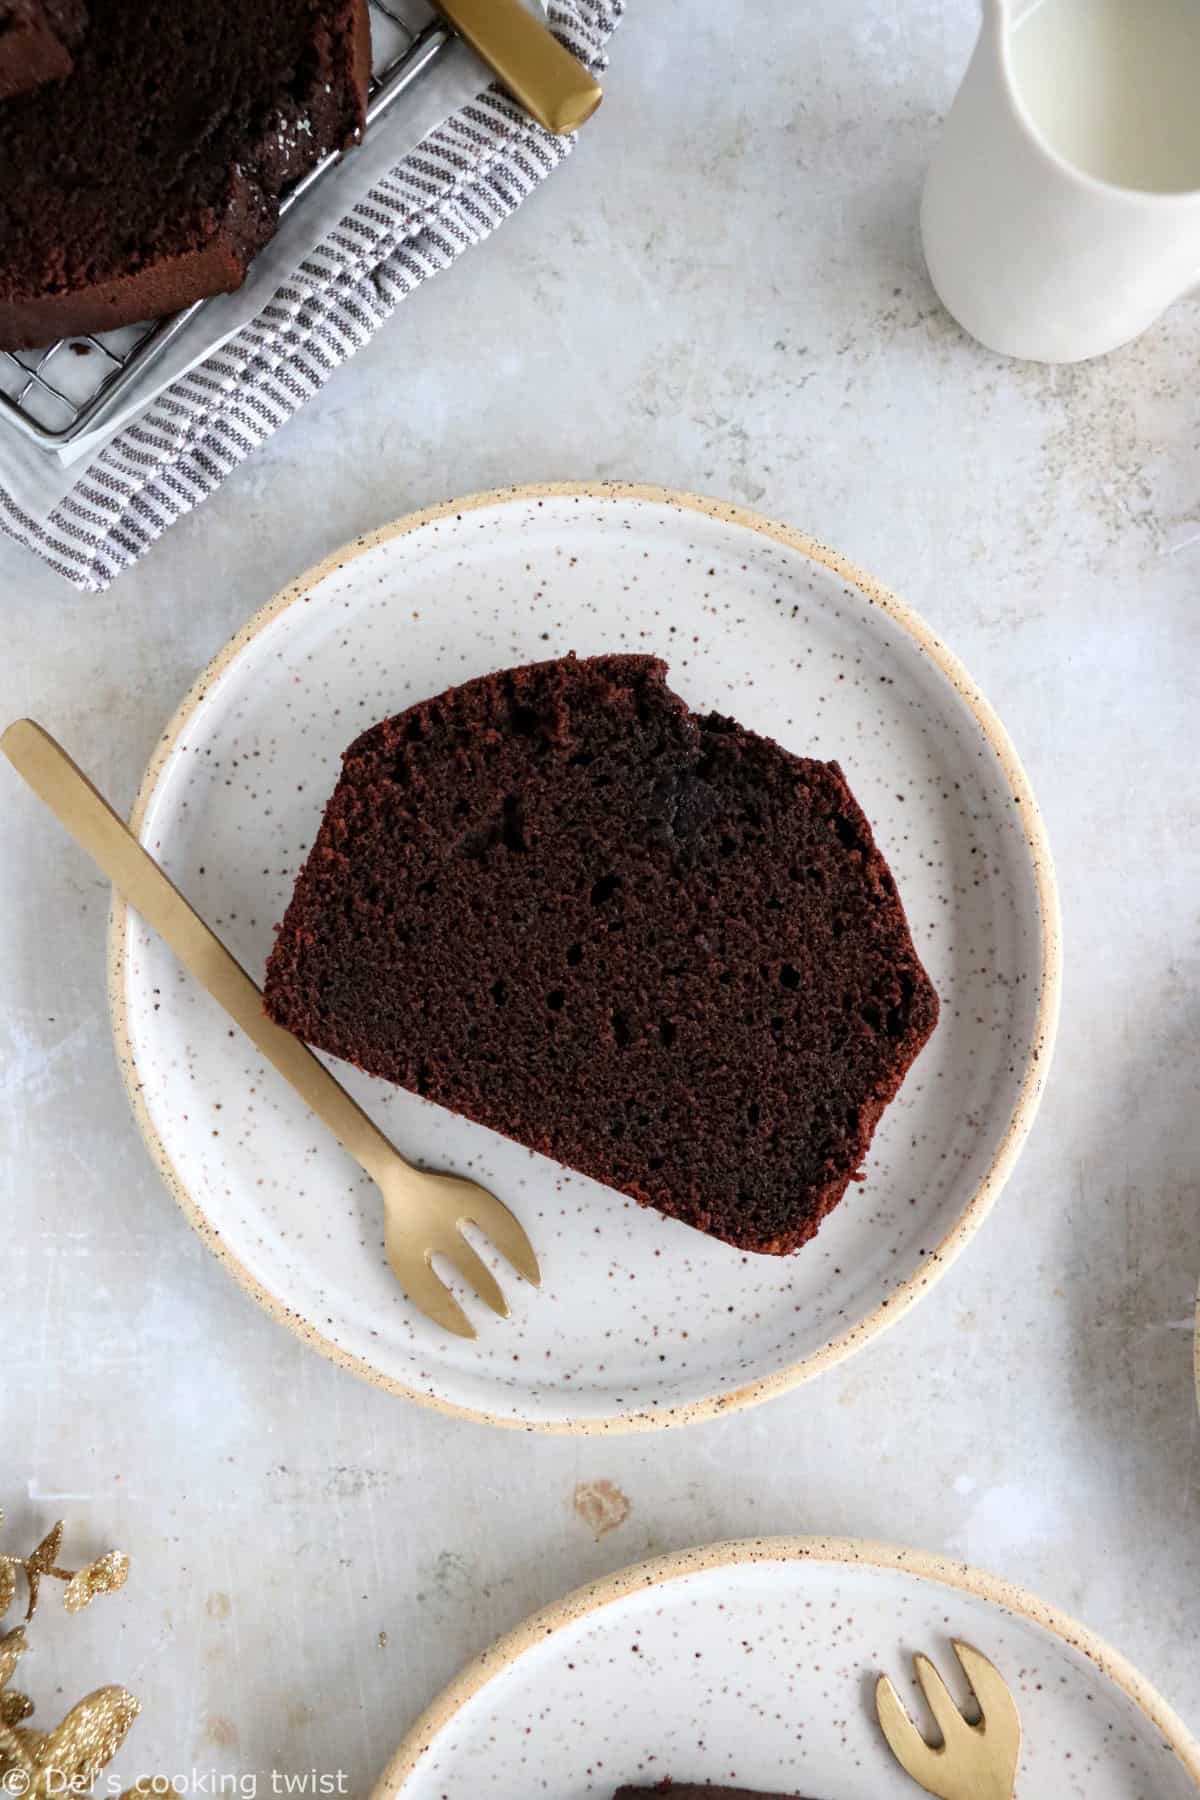 Voici un cake au chocolat facile à la fois riche, dense, moelleux et fort en chocolat.